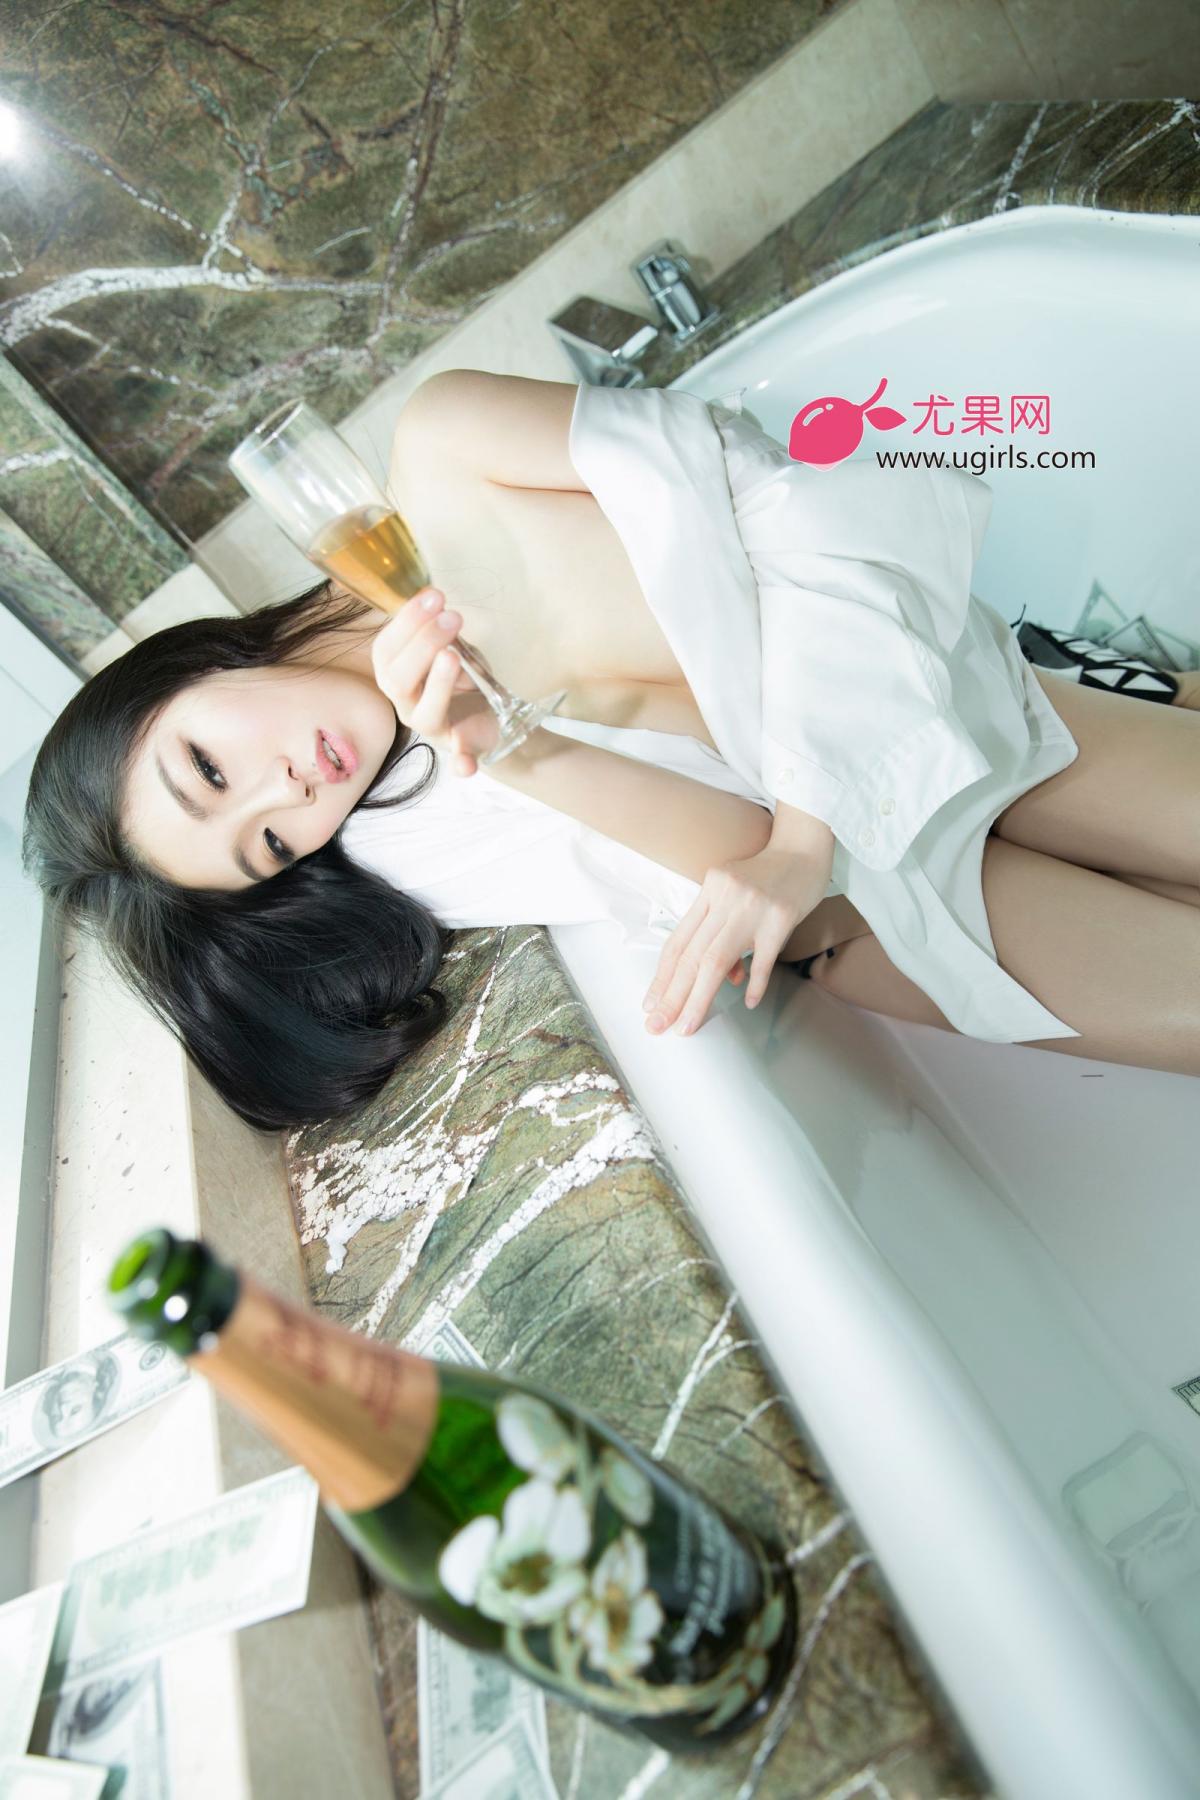 [Ugirls] Vol.002 Xu Wen Ting - Hotgirl.biz